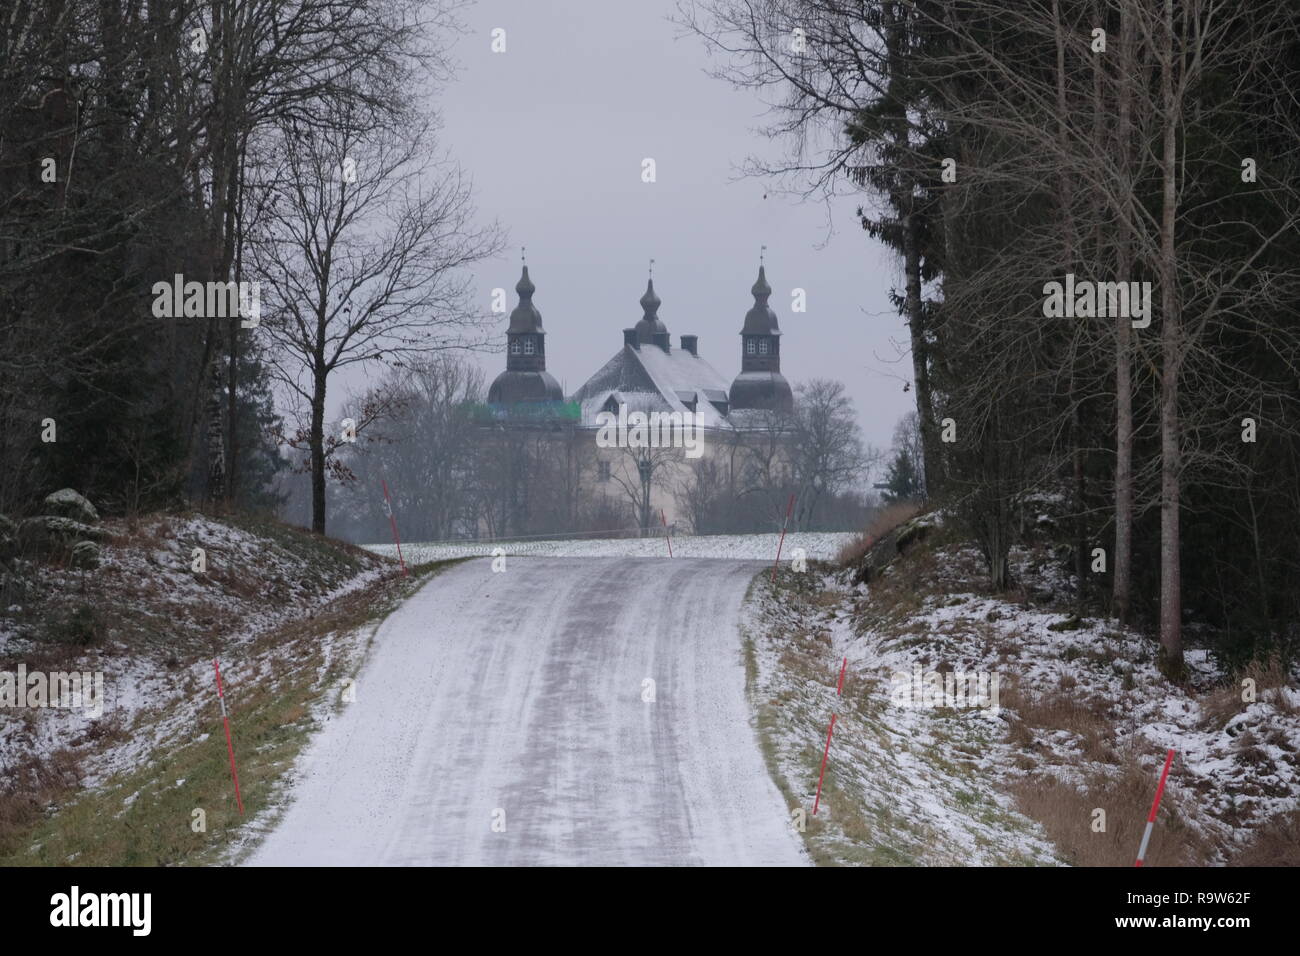 Linkoping, Ostergotland, Svezia, 21 dicembre 2018, vista del castello di Ekenas, Ekenäs slott in svedese, durante una giornata nevosa Foto Stock